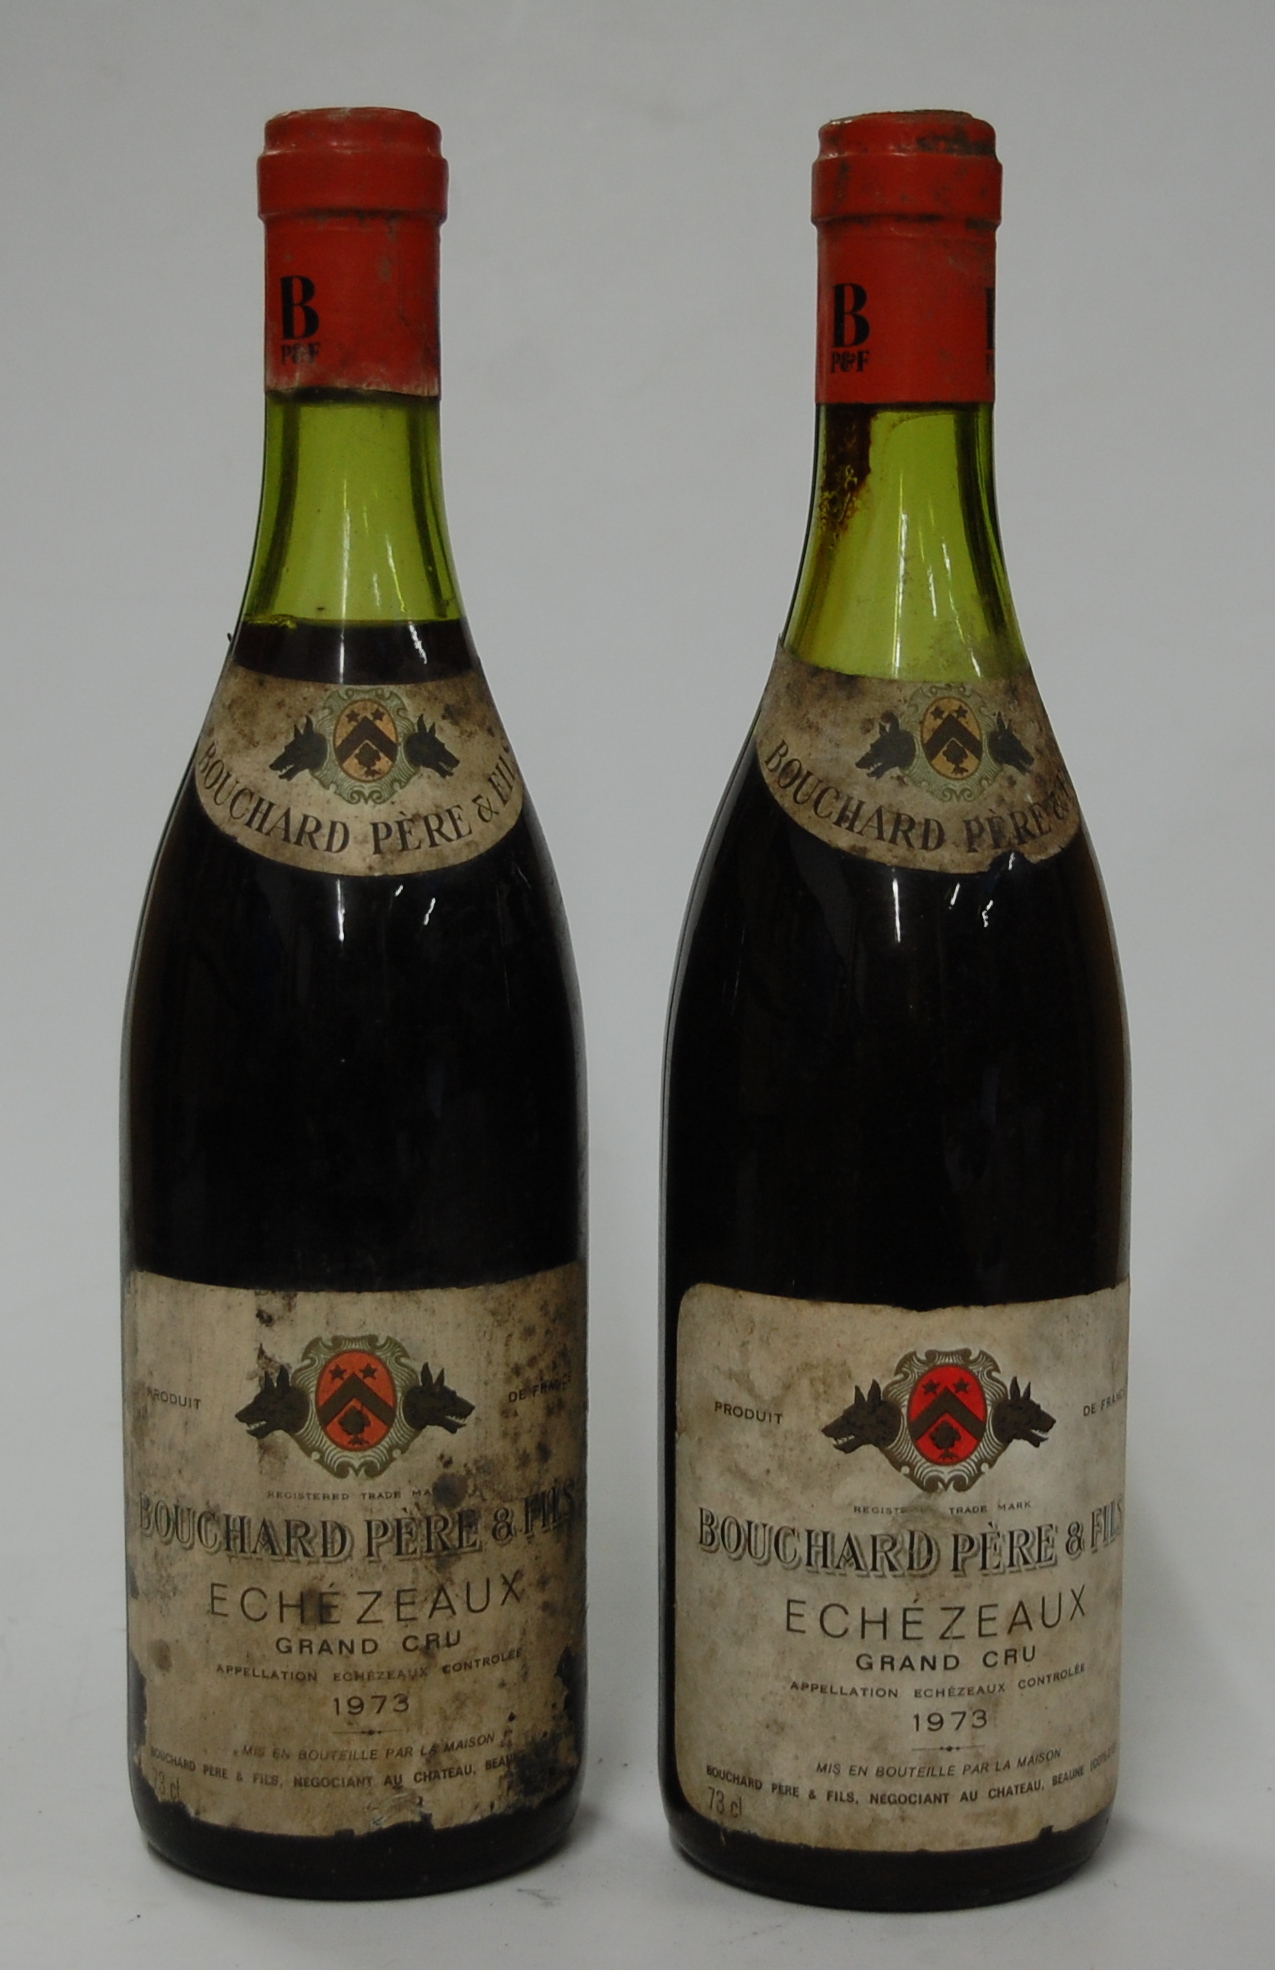 Echezeaux Grand Cru, 1973, Bouchard Pére et Fils, two bottles